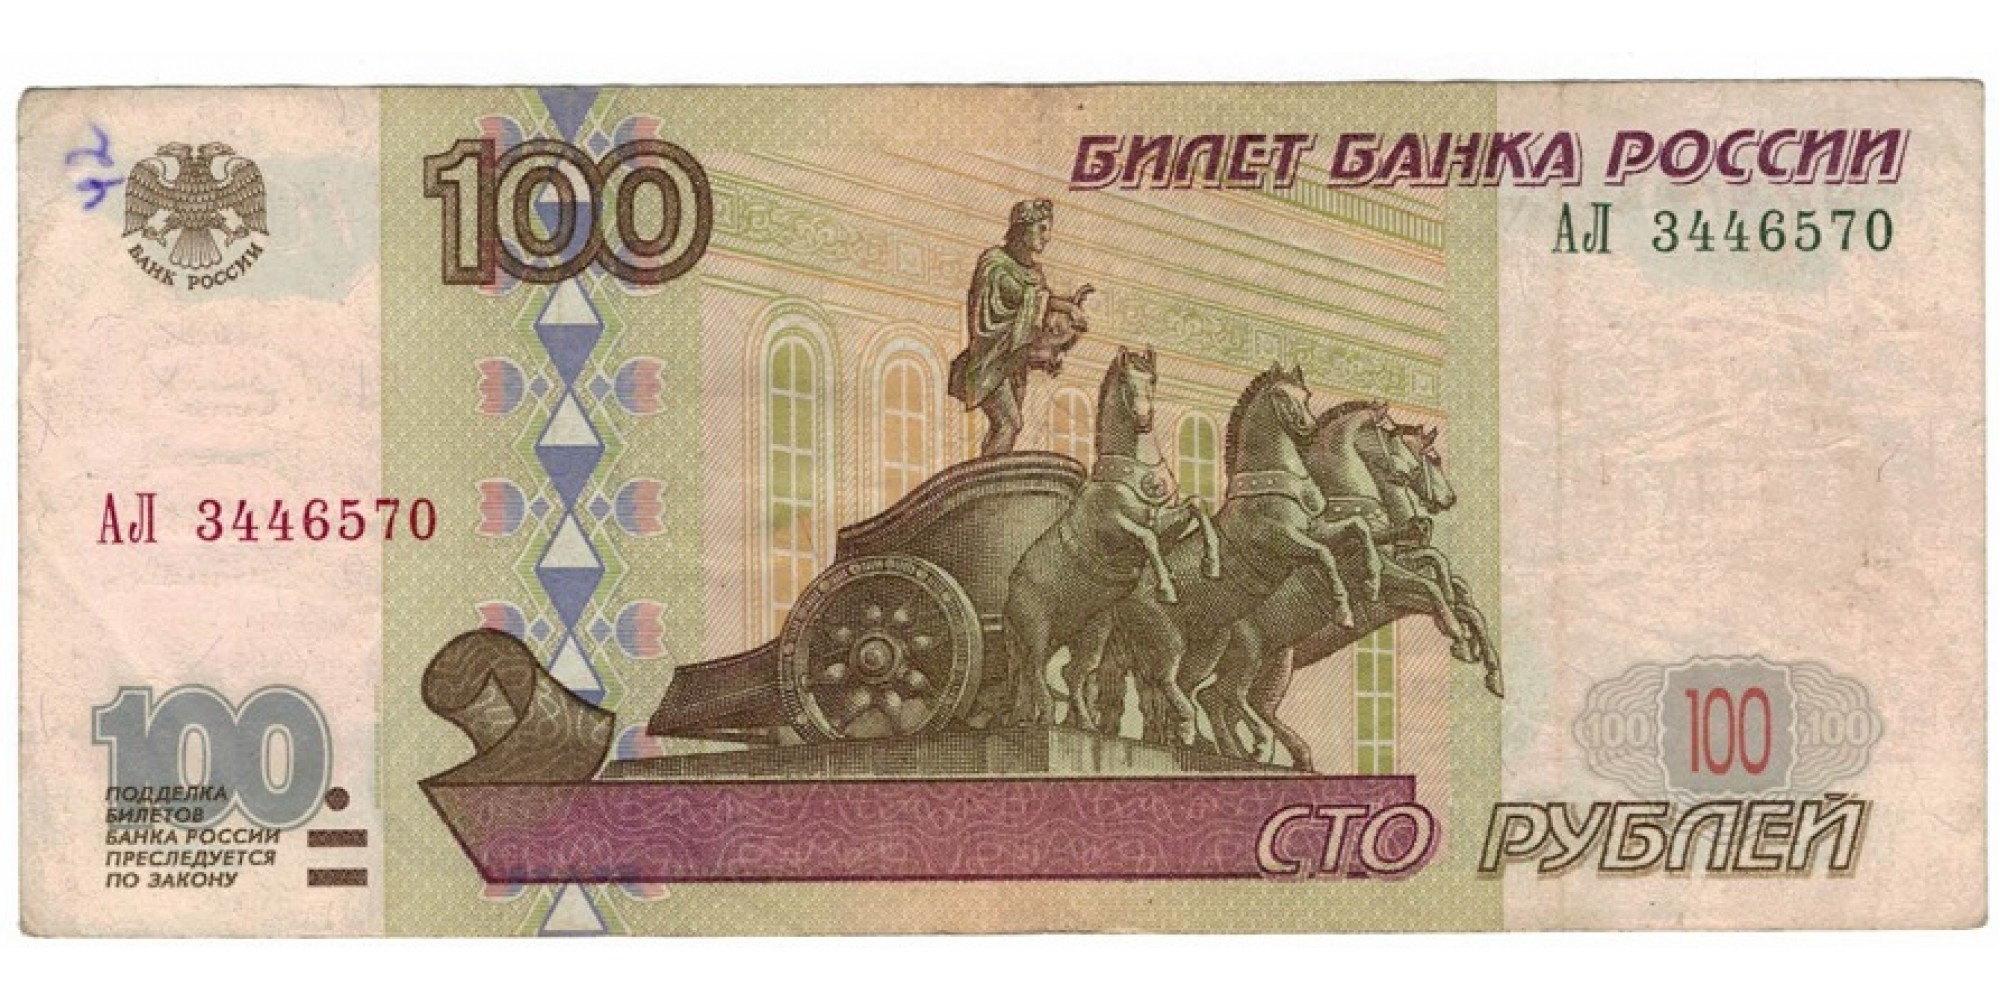 Россия 100 рублей 1997 год модификация 2001 год редкая серия АЛ 3446570